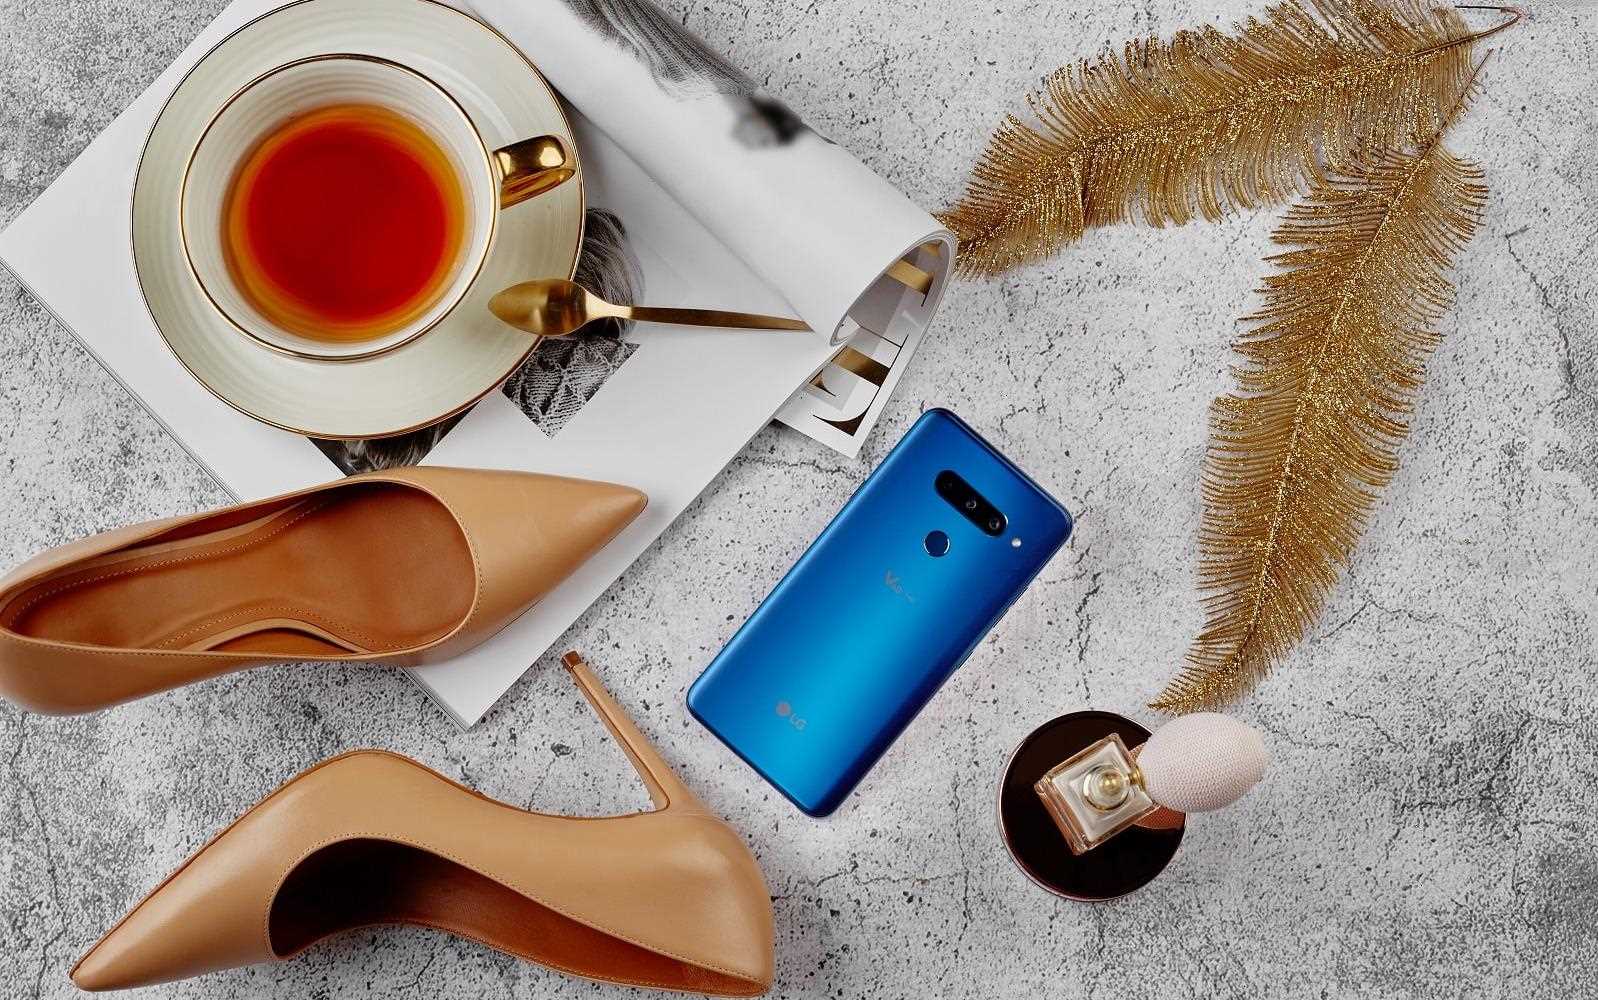 Stylowy smartfon LG V40 w otoczeniu złotych piór, eleganckich szpilek, filiżanki z herbatą i perfum